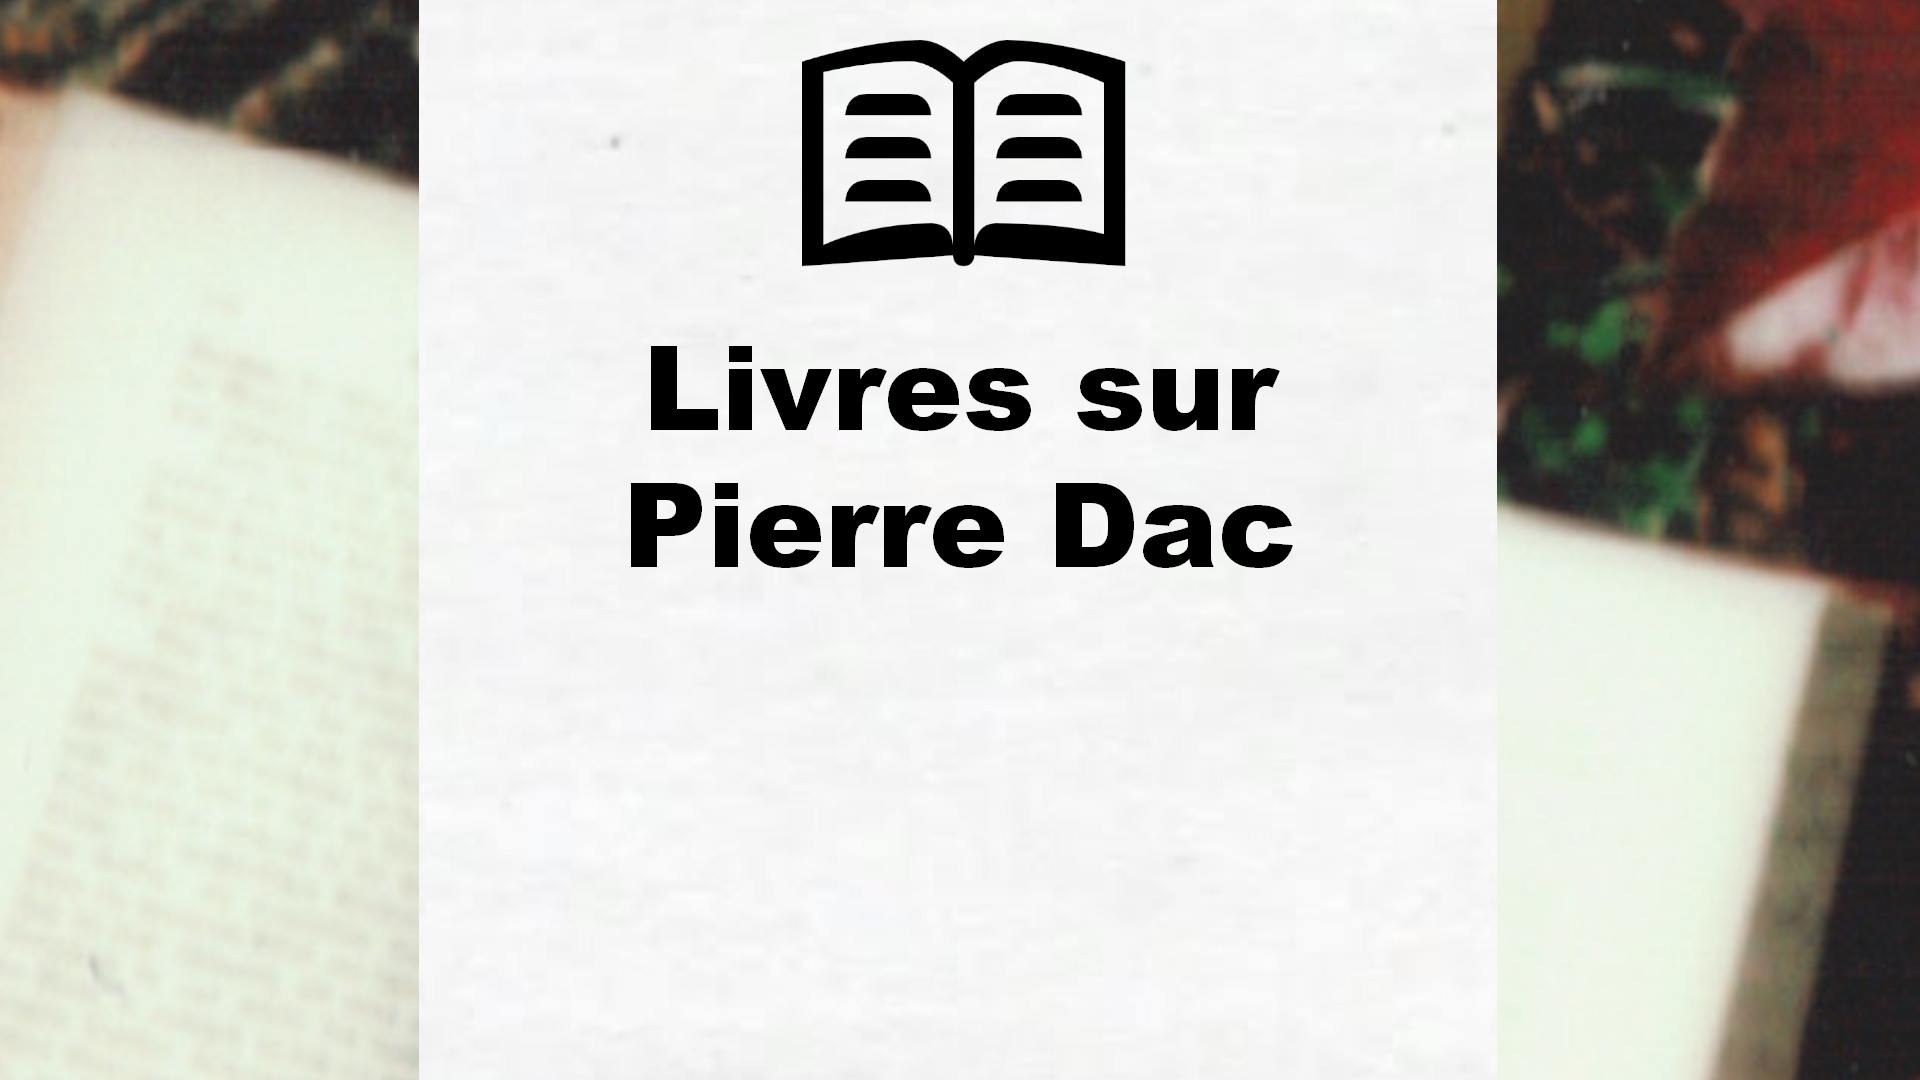 Livres sur Pierre Dac